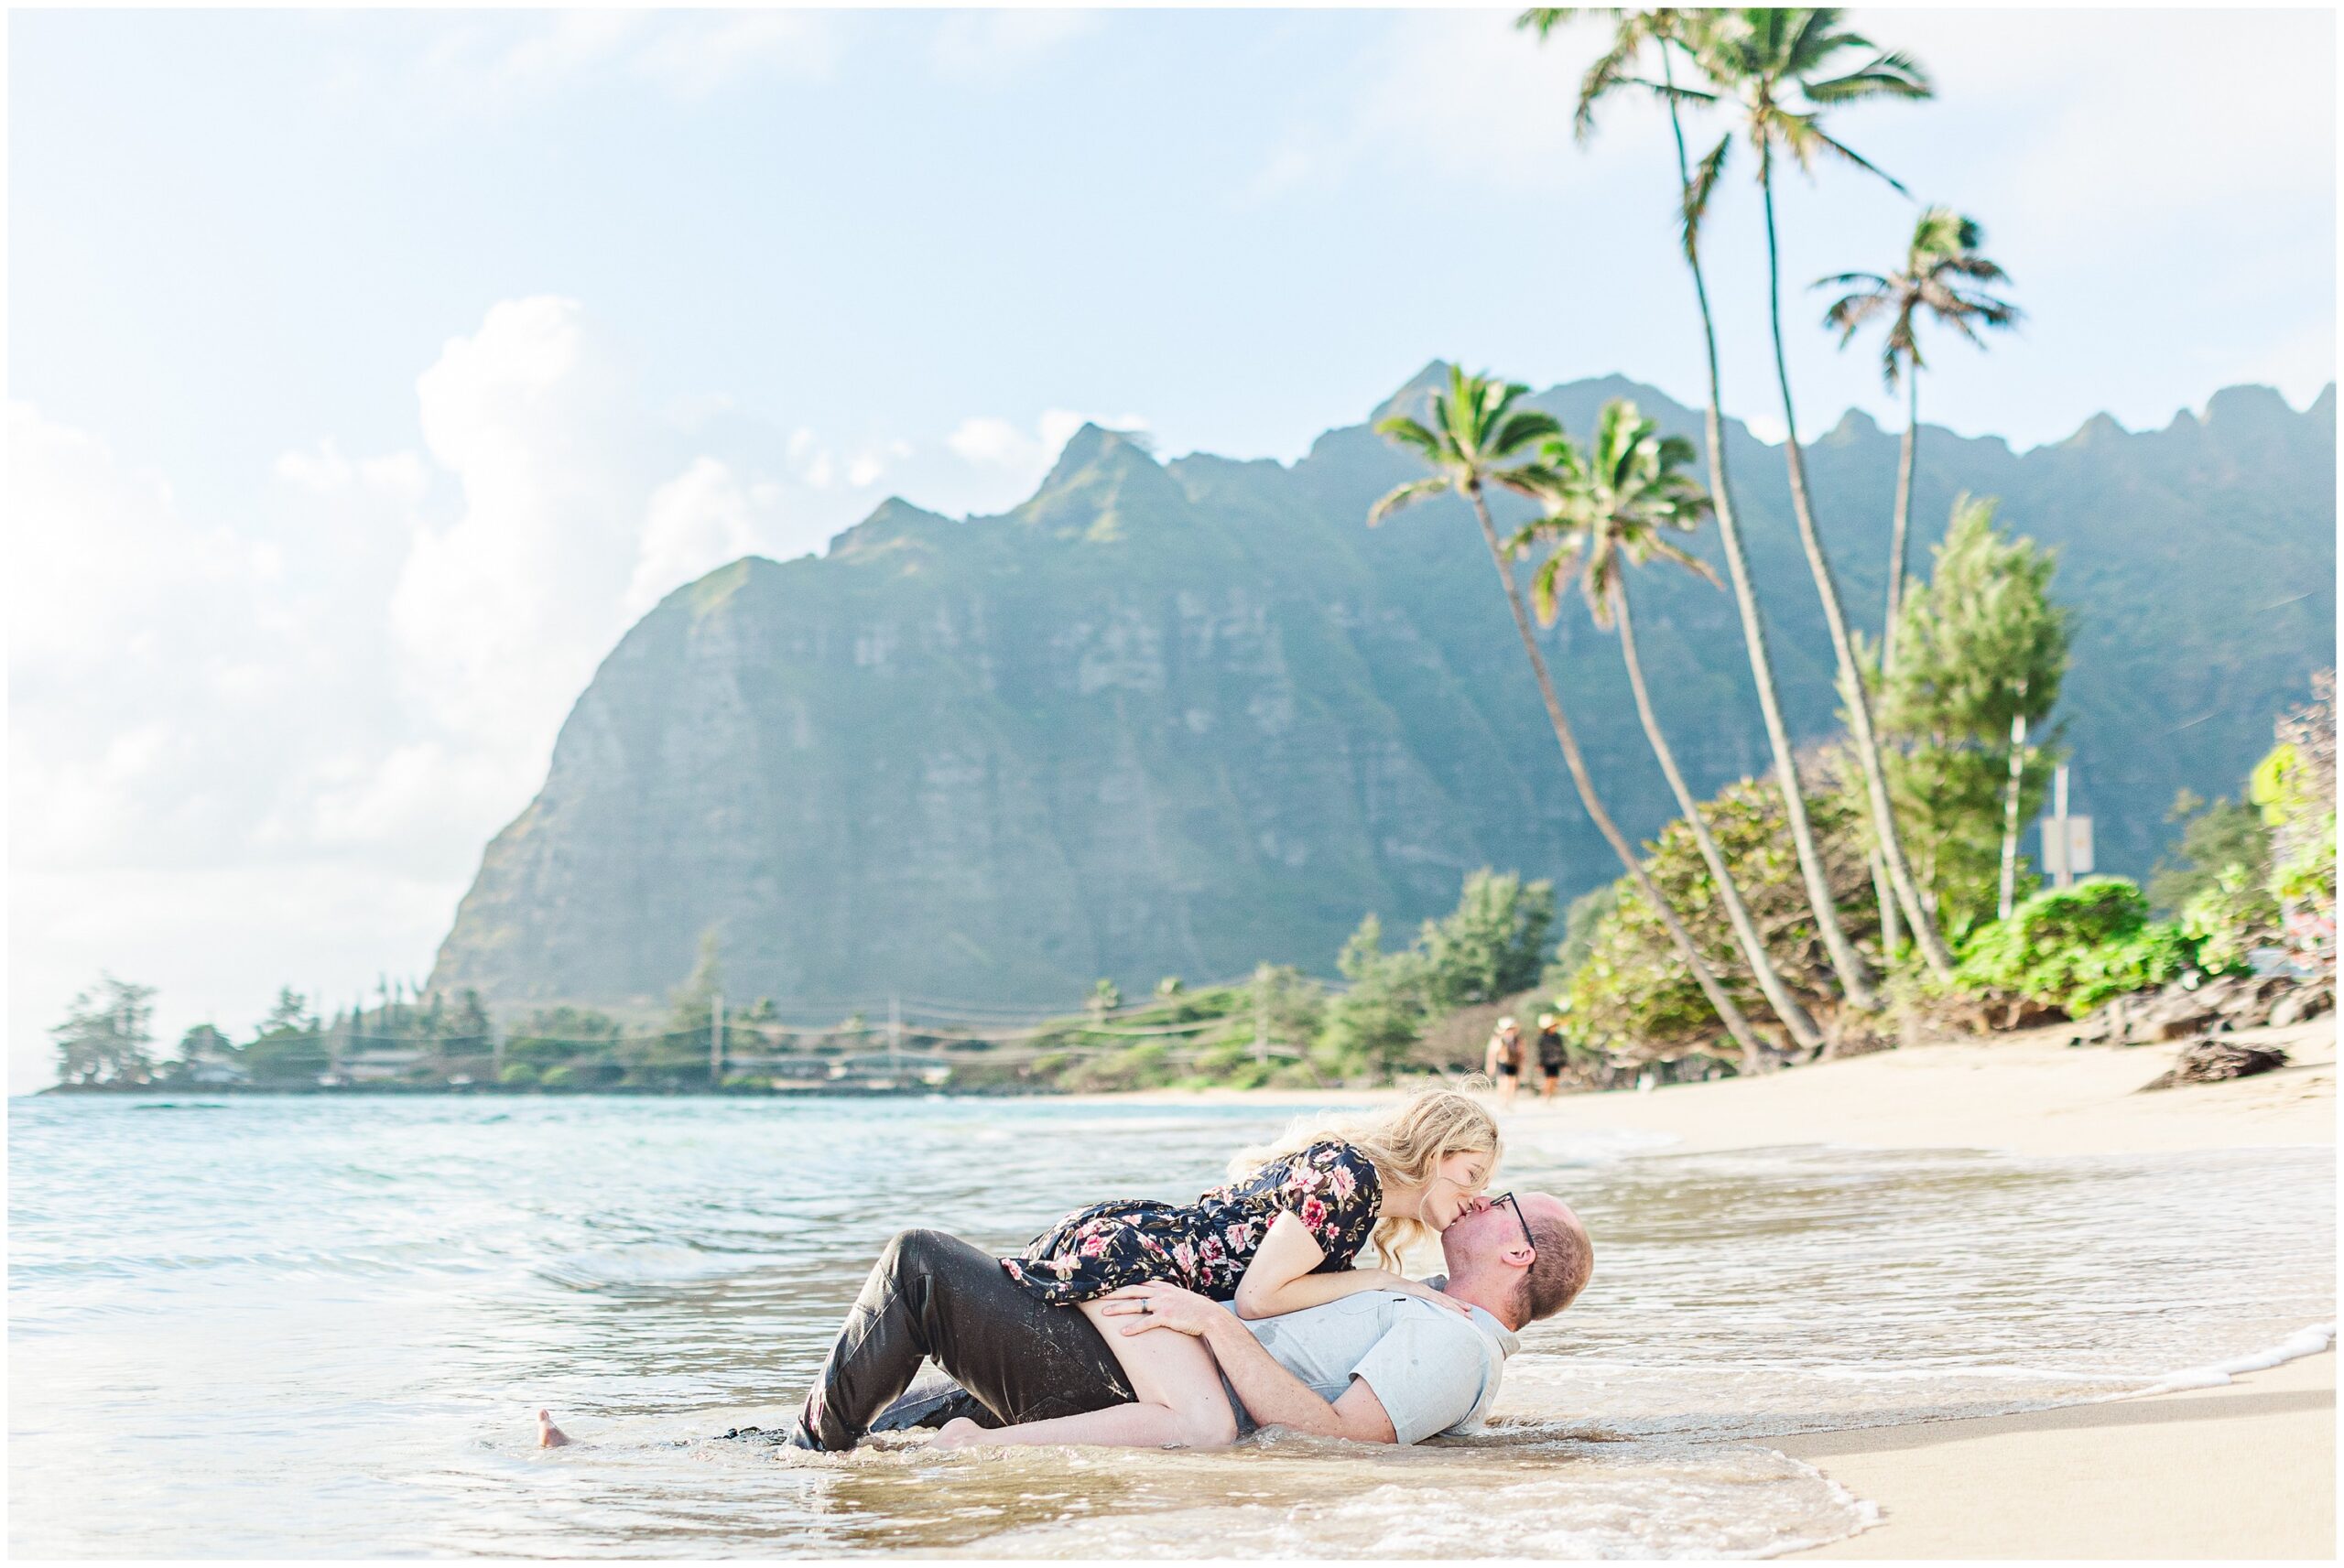 Steamy photo of a couple on Ka'a'a'wa Beach